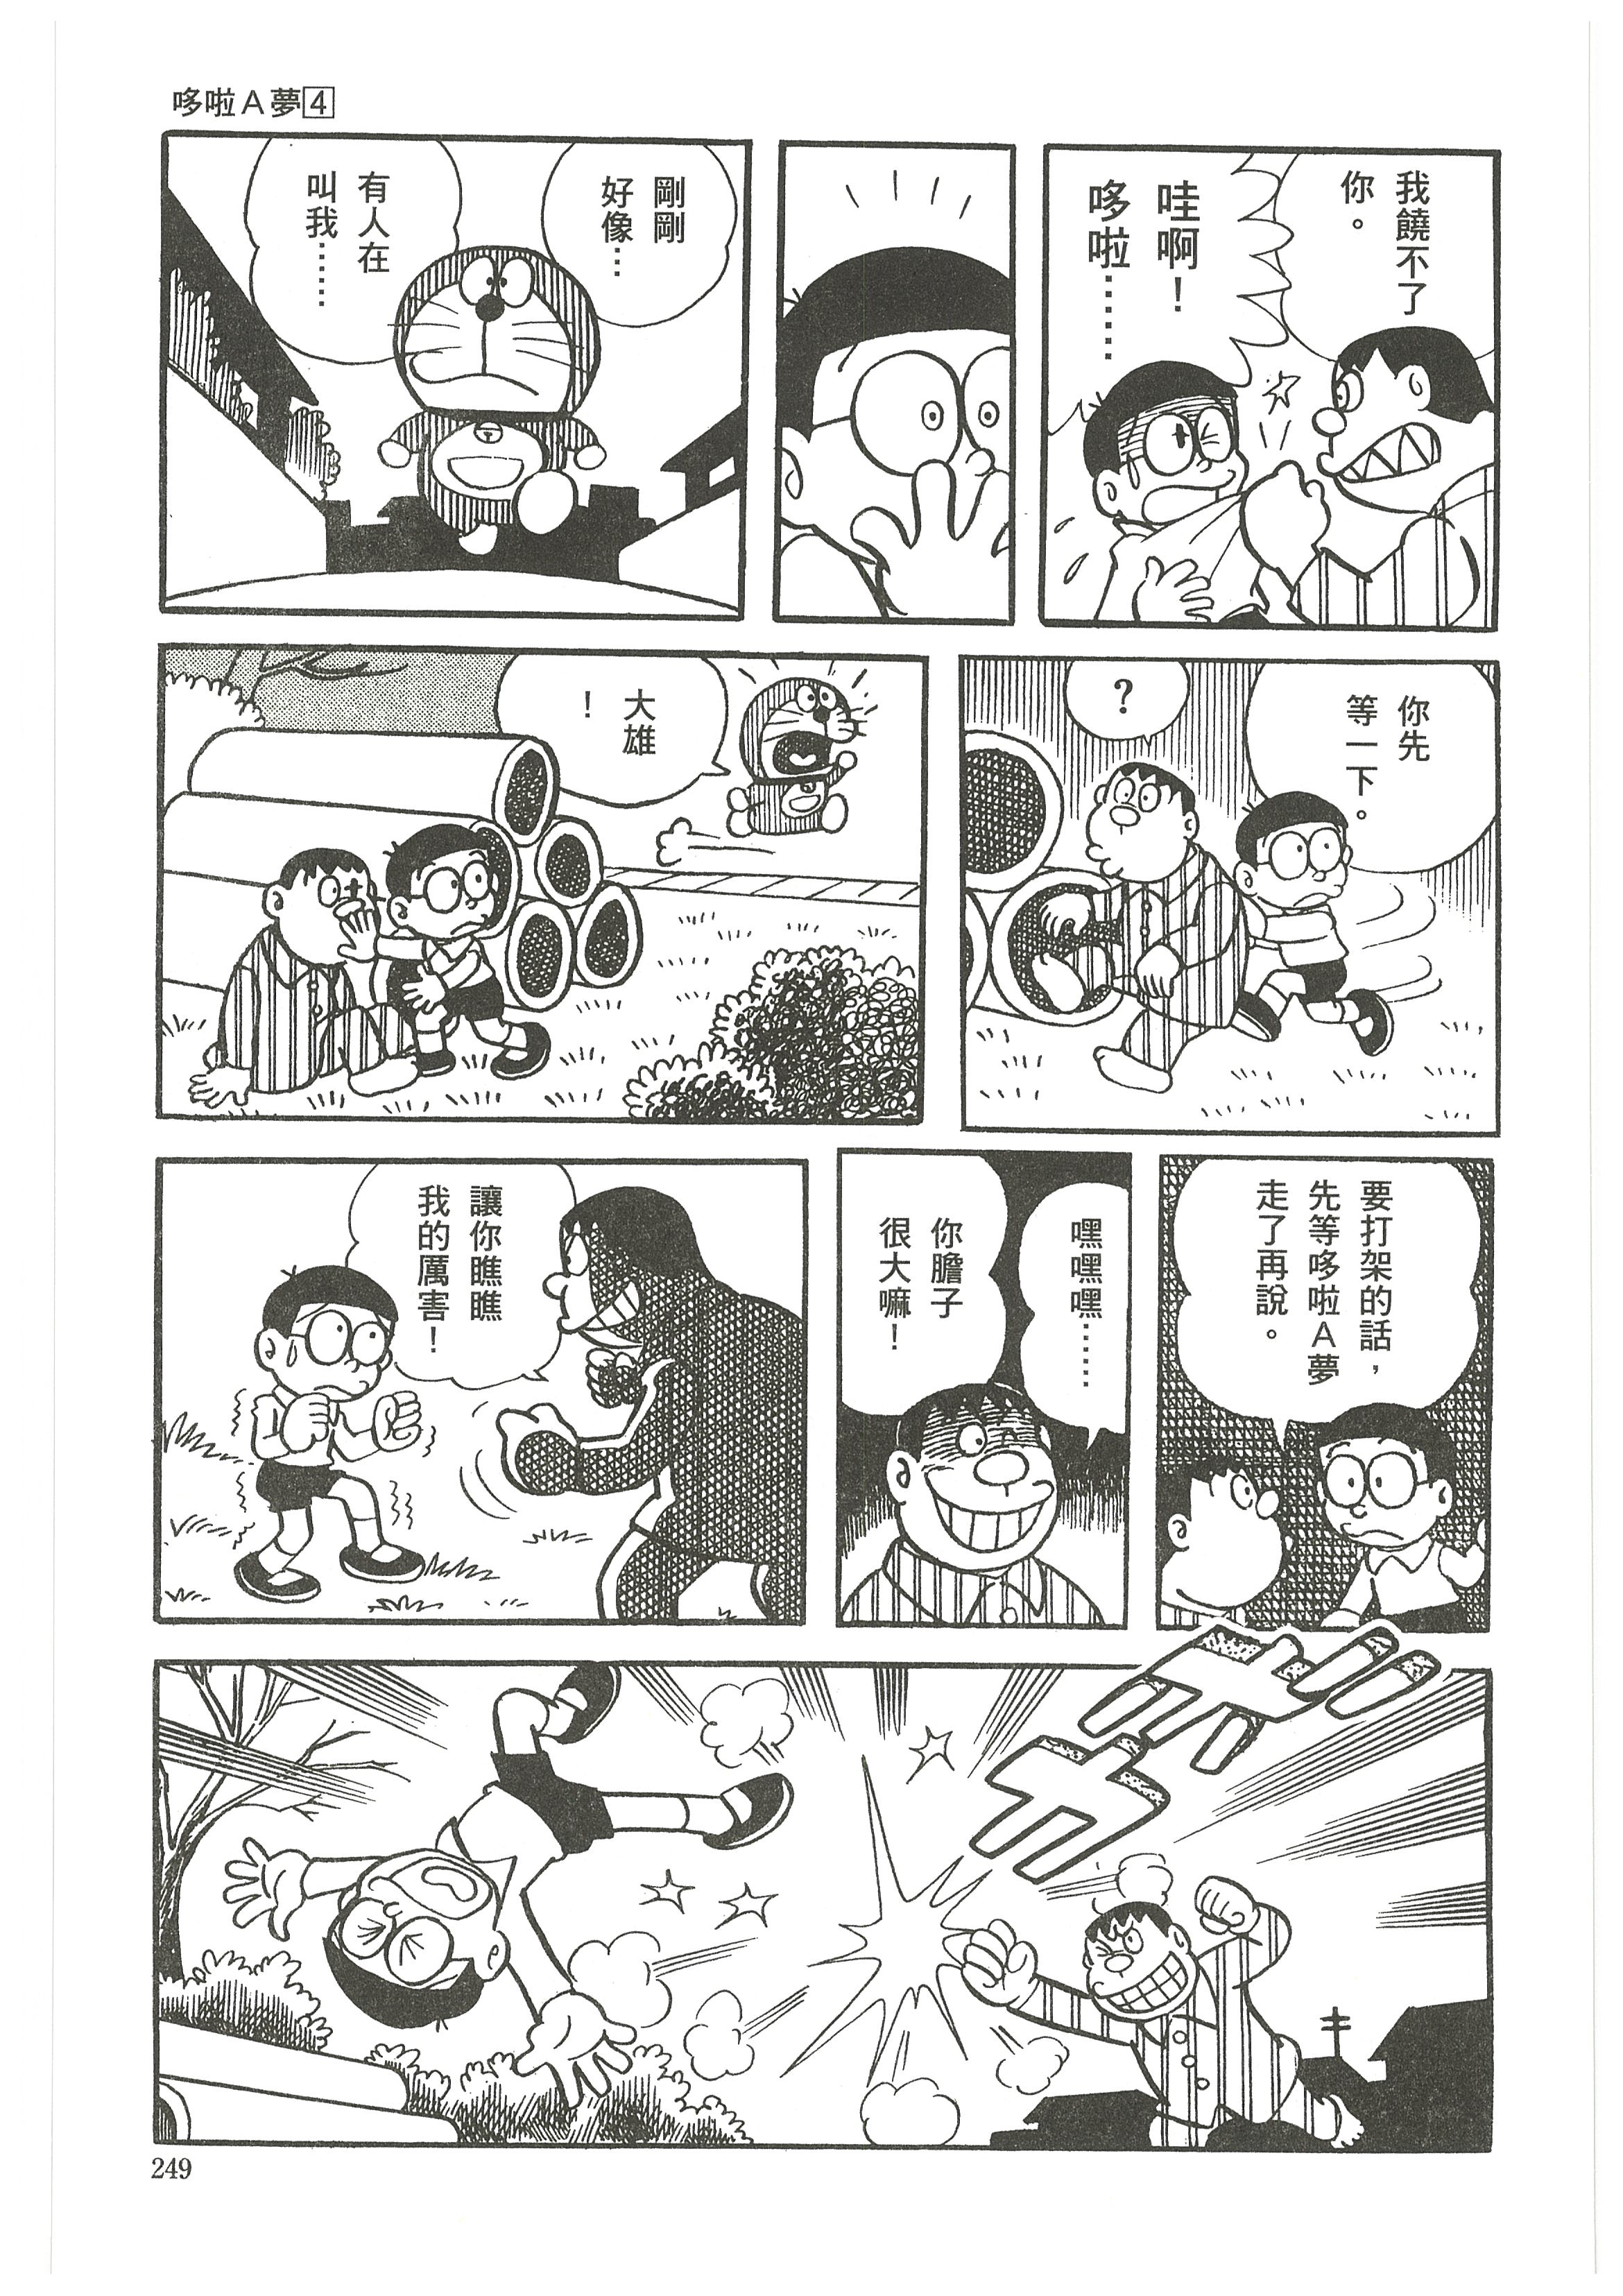 【辟谣】哆啦a梦的漫画曾出过官方结局?不存